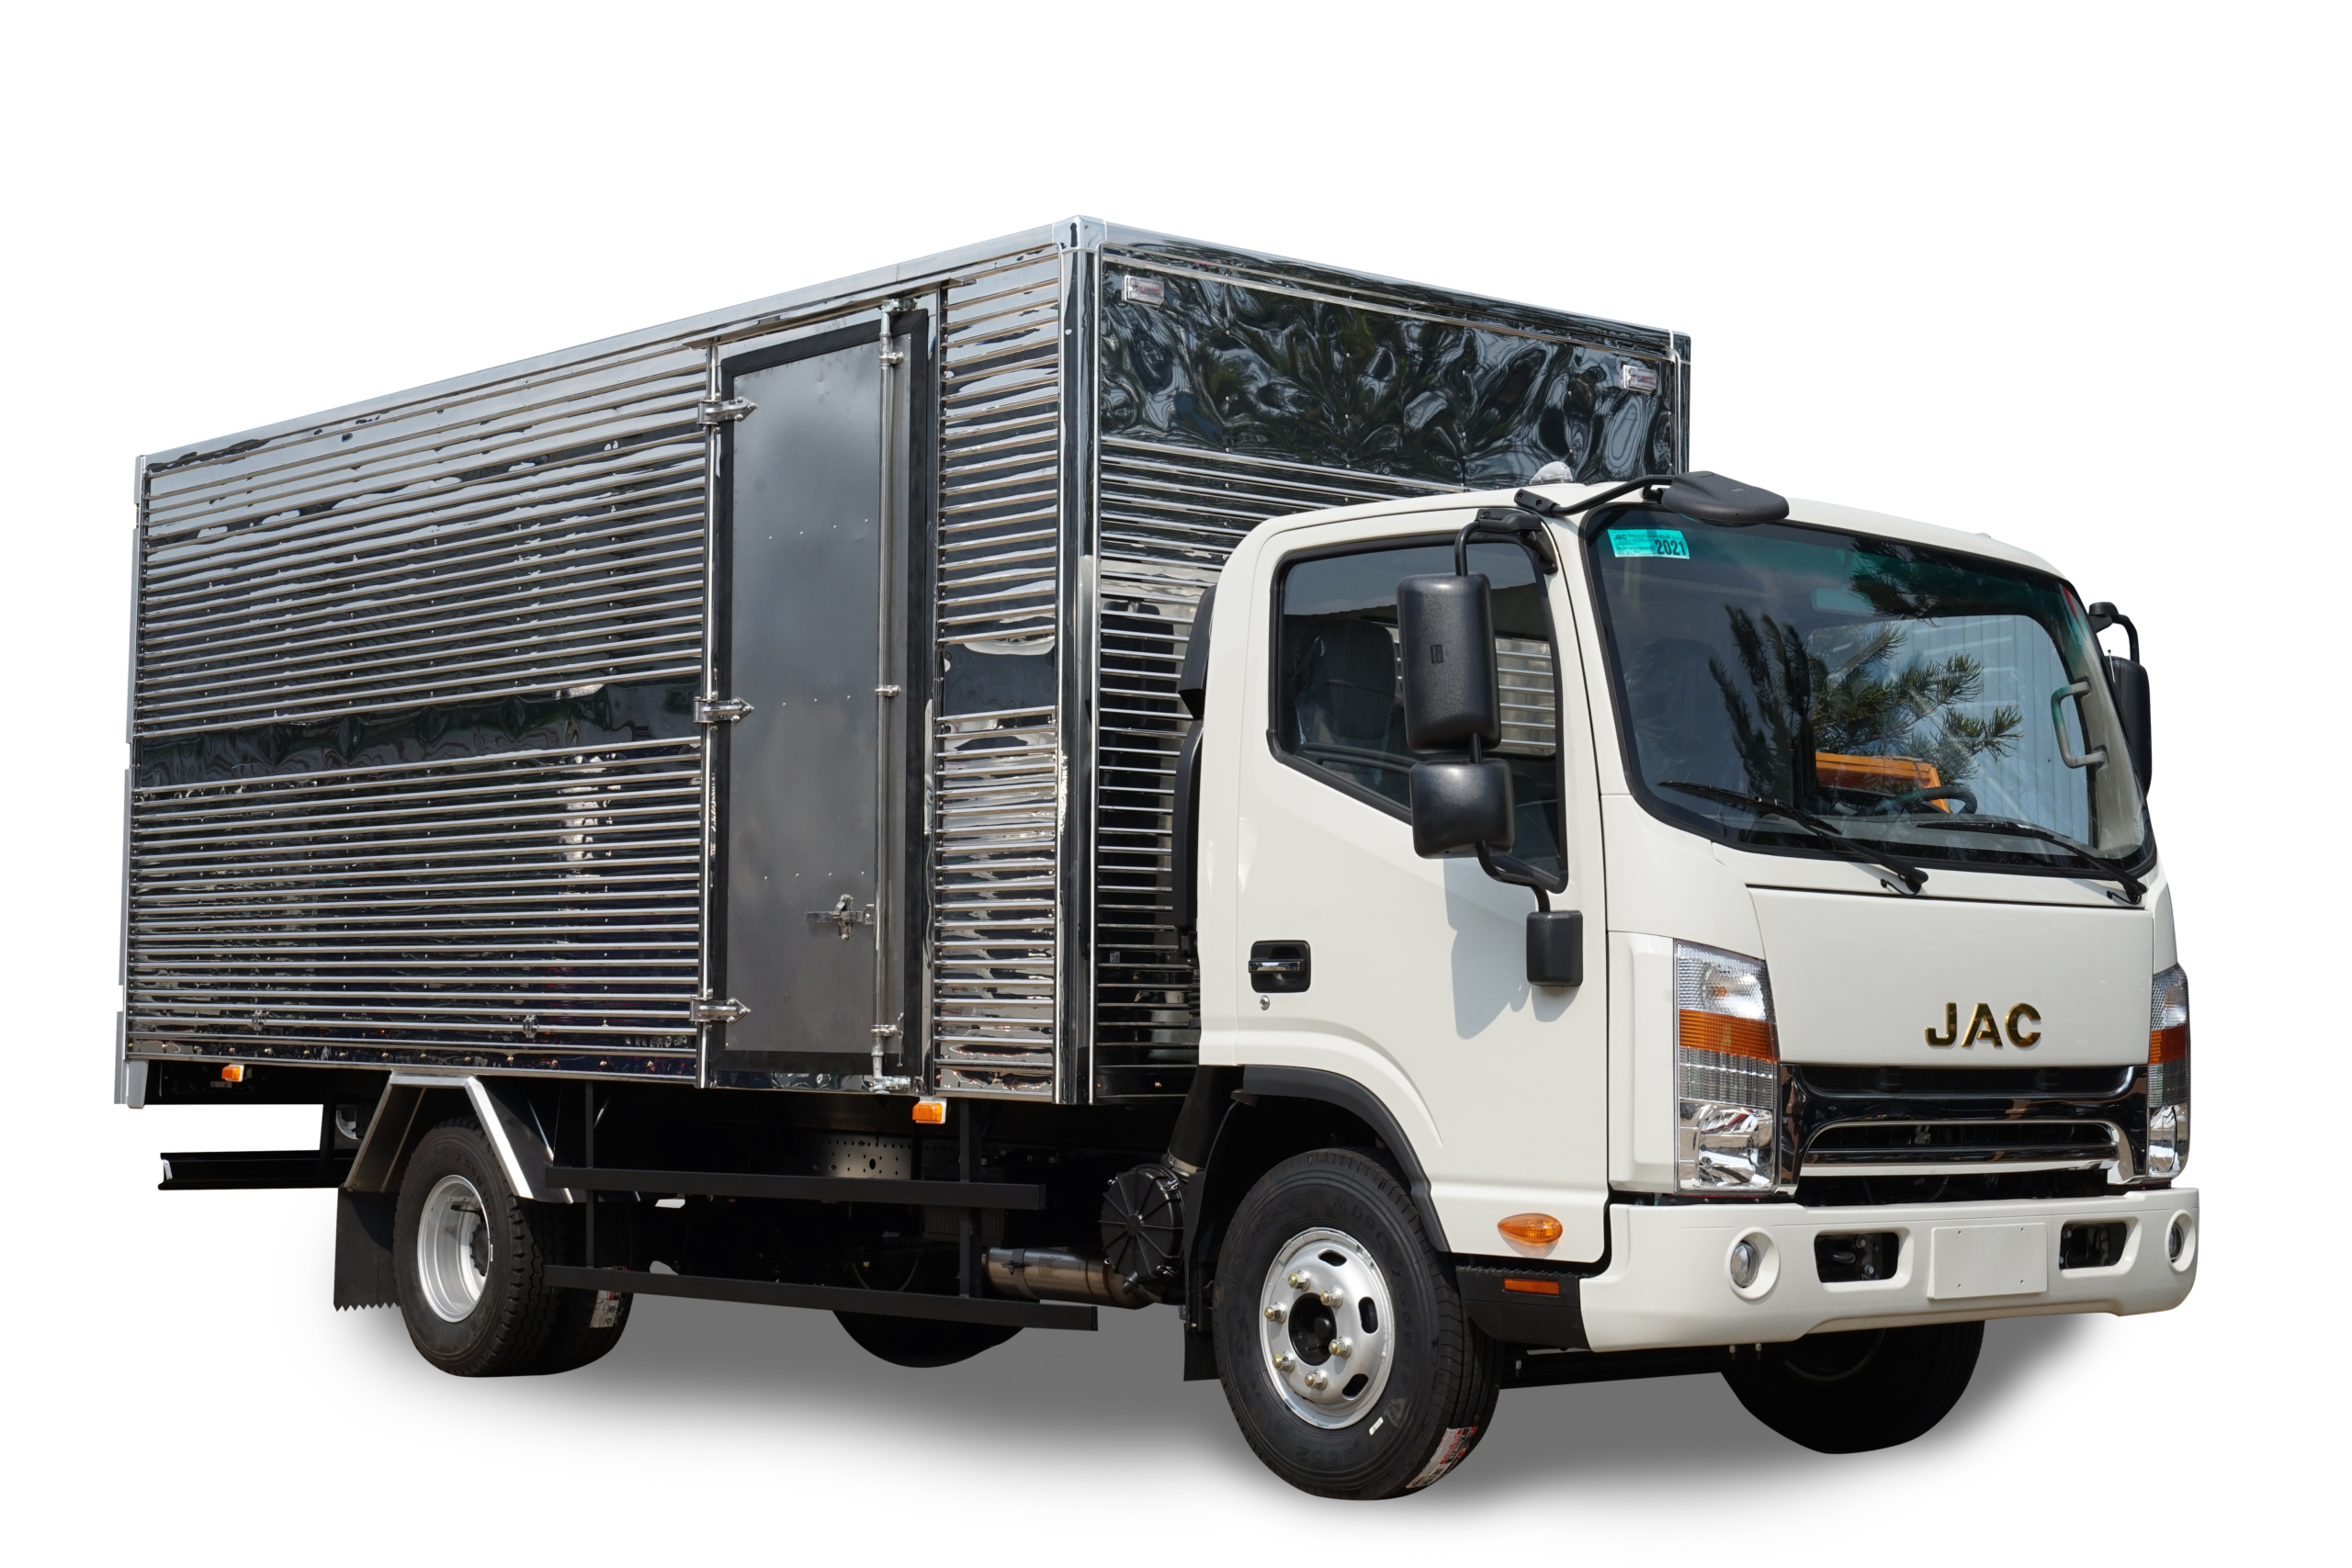 Giá xe tải thùng kín JAC N200S cao hơn so với thùng bạt 